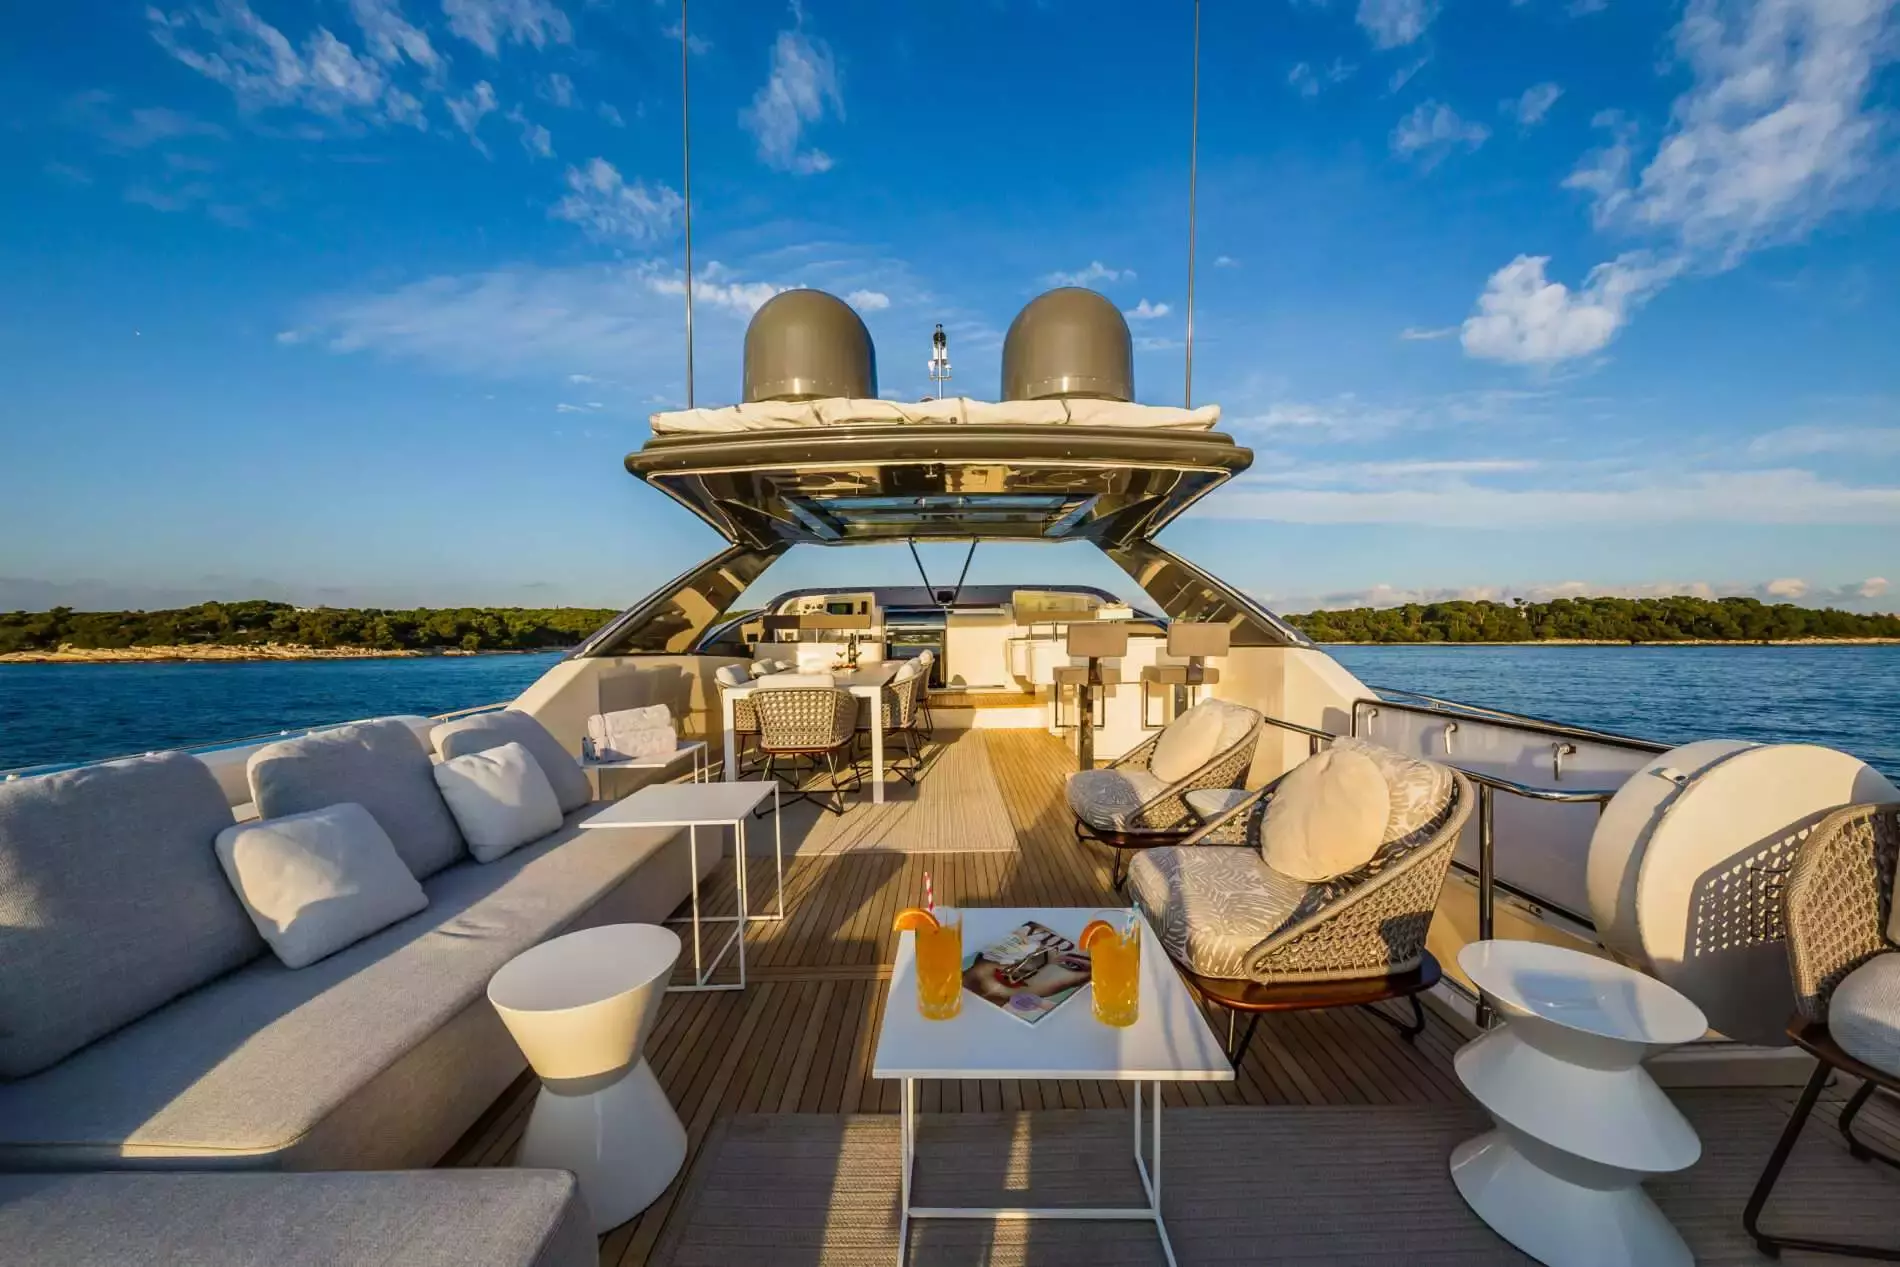 Damari by Ferretti - Special Offer for a private Superyacht Rental in La Spezia with a crew